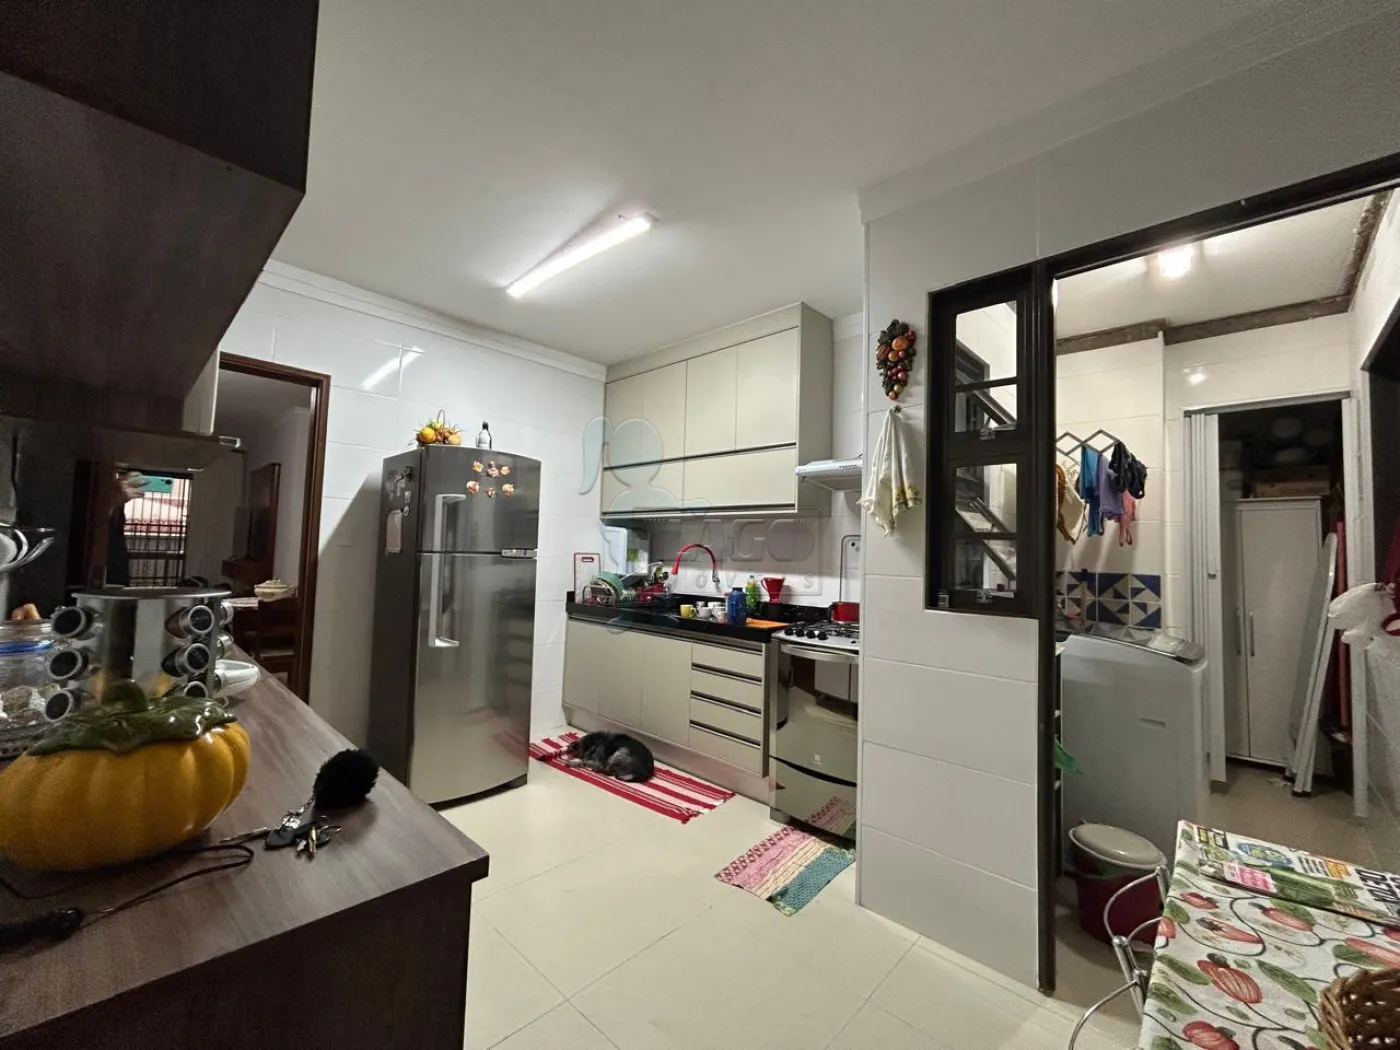 Comprar Apartamentos / Padrão em Ribeirão Preto R$ 400.000,00 - Foto 9